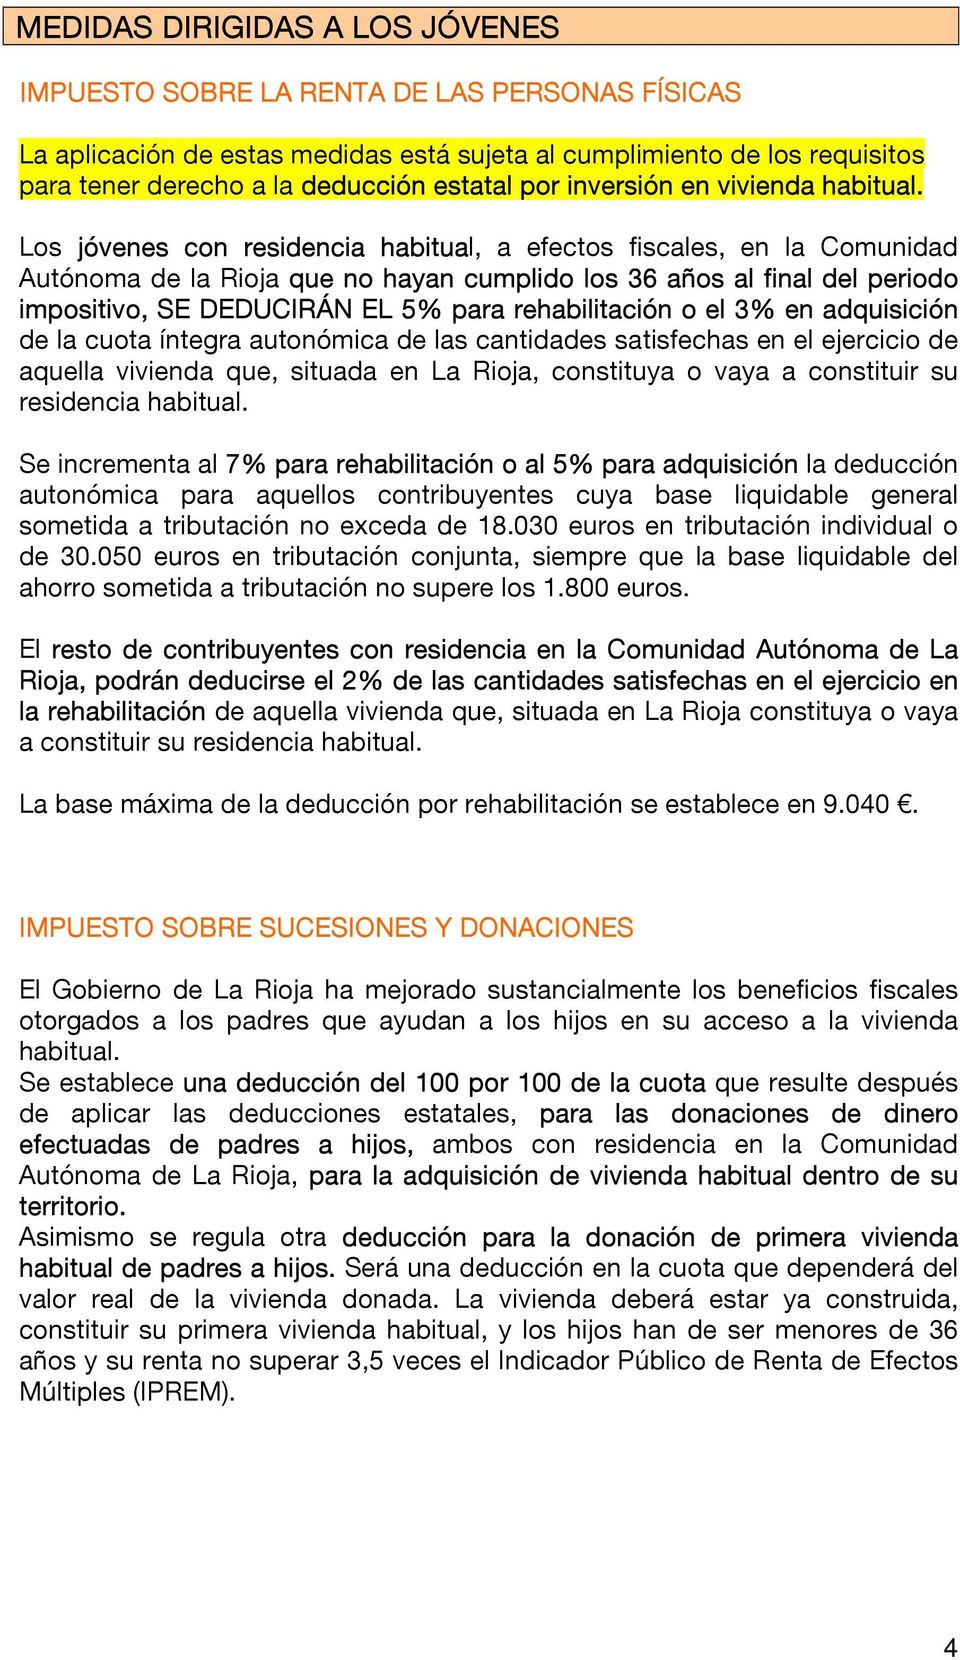 Los jóvenes con residencia habitual, a efectos fiscales, en la Comunidad Autónoma de la Rioja que no hayan cumplido los 36 años al final del periodo impositivo, SE DEDUCIRÁN EL 5% para rehabilitación